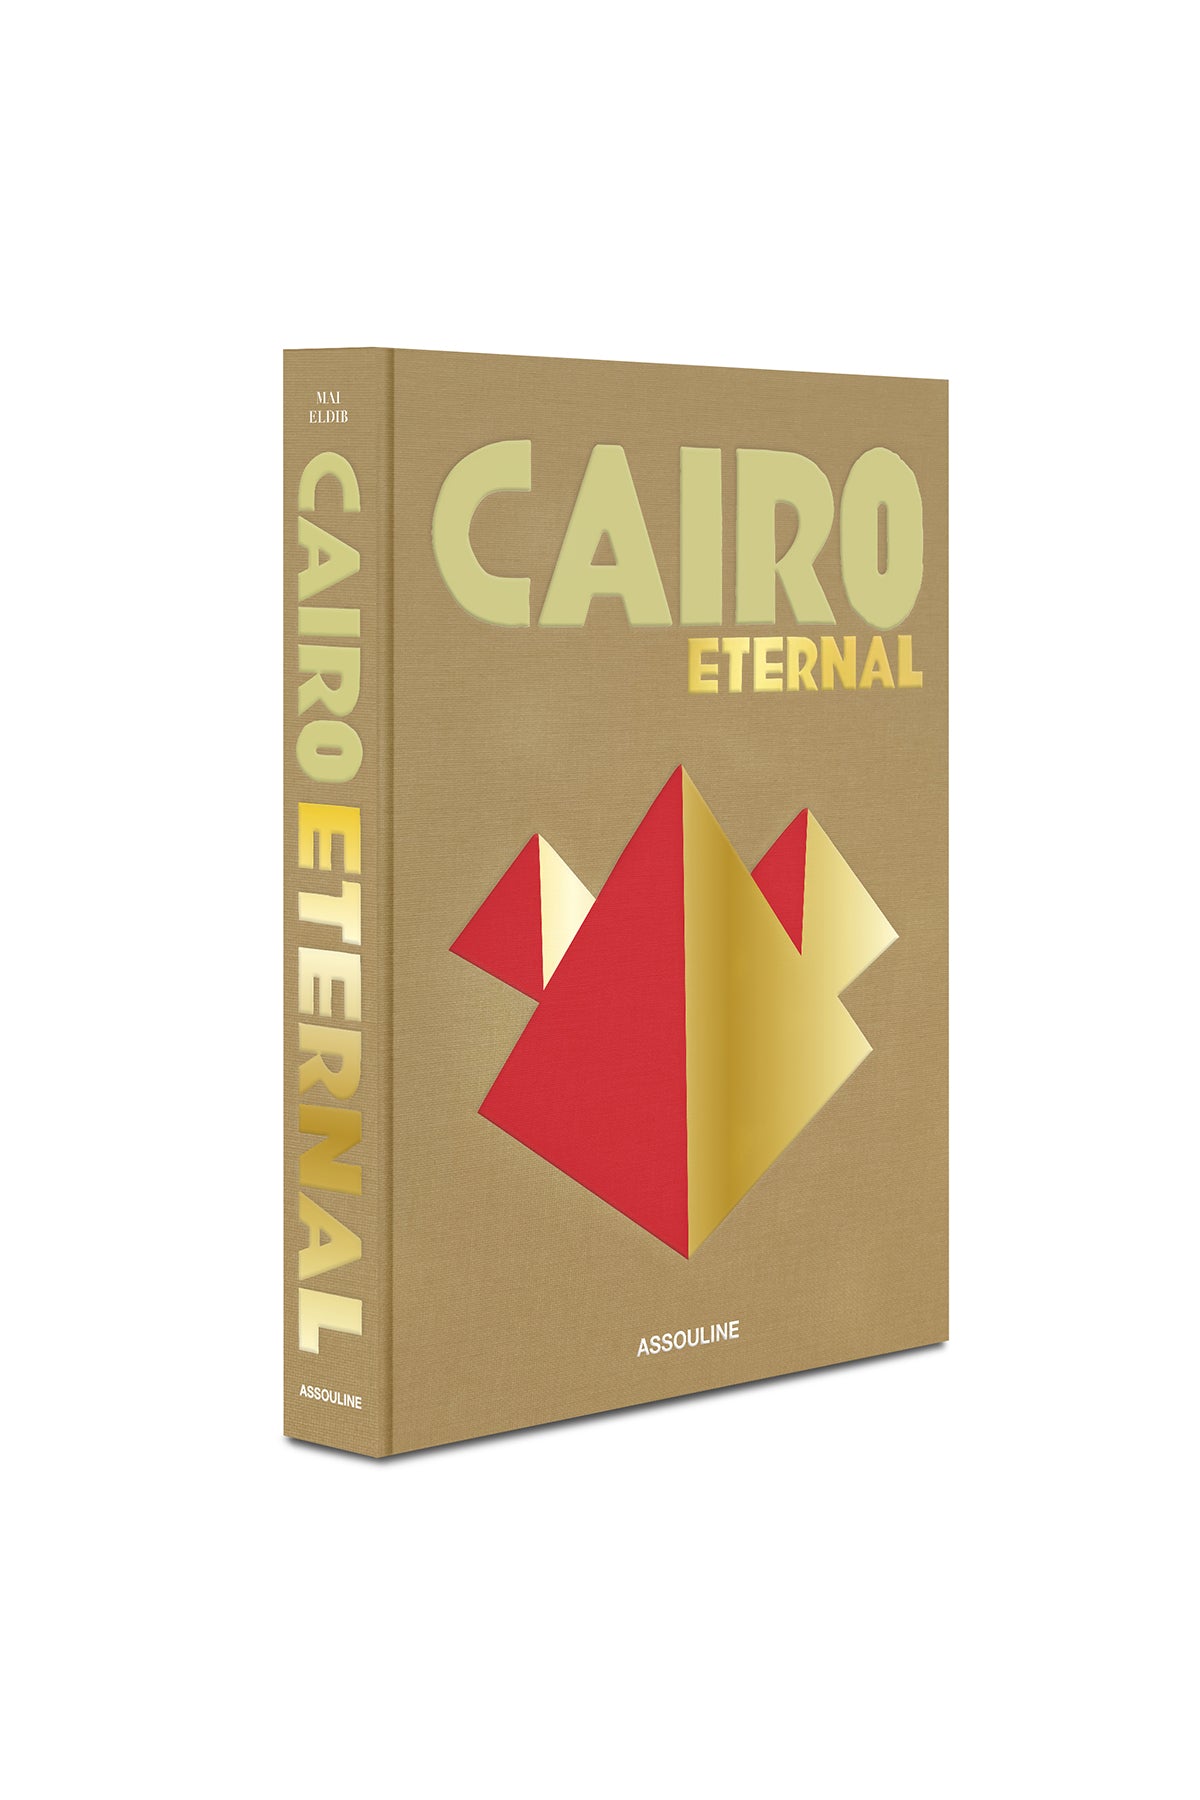 ASSOULINE | CAIRO ETERNAL